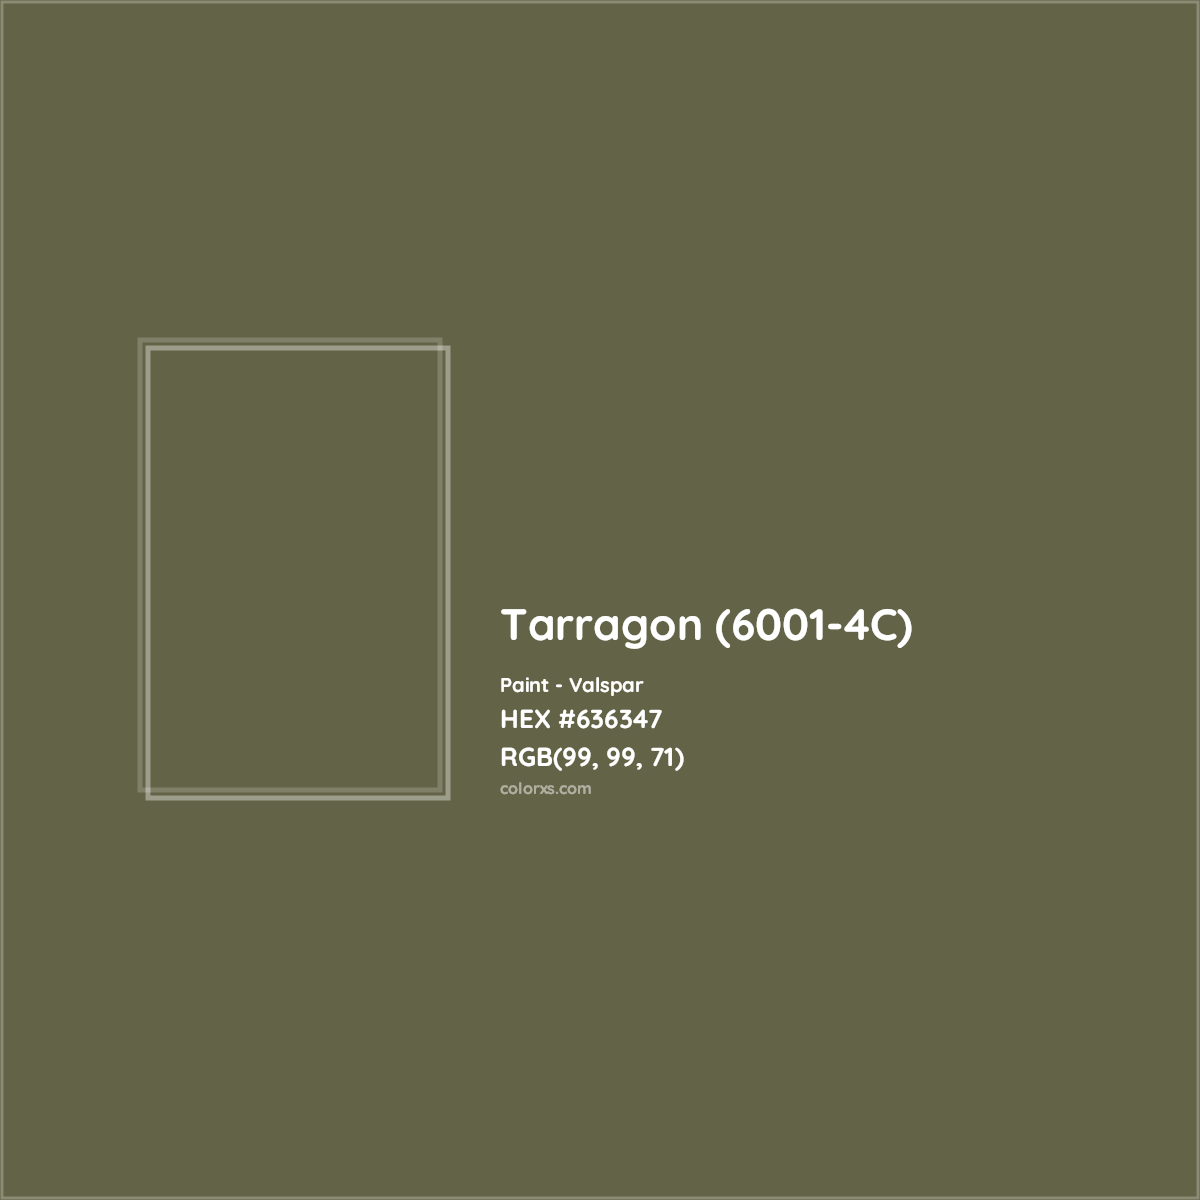 HEX #636347 Tarragon (6001-4C) Paint Valspar - Color Code